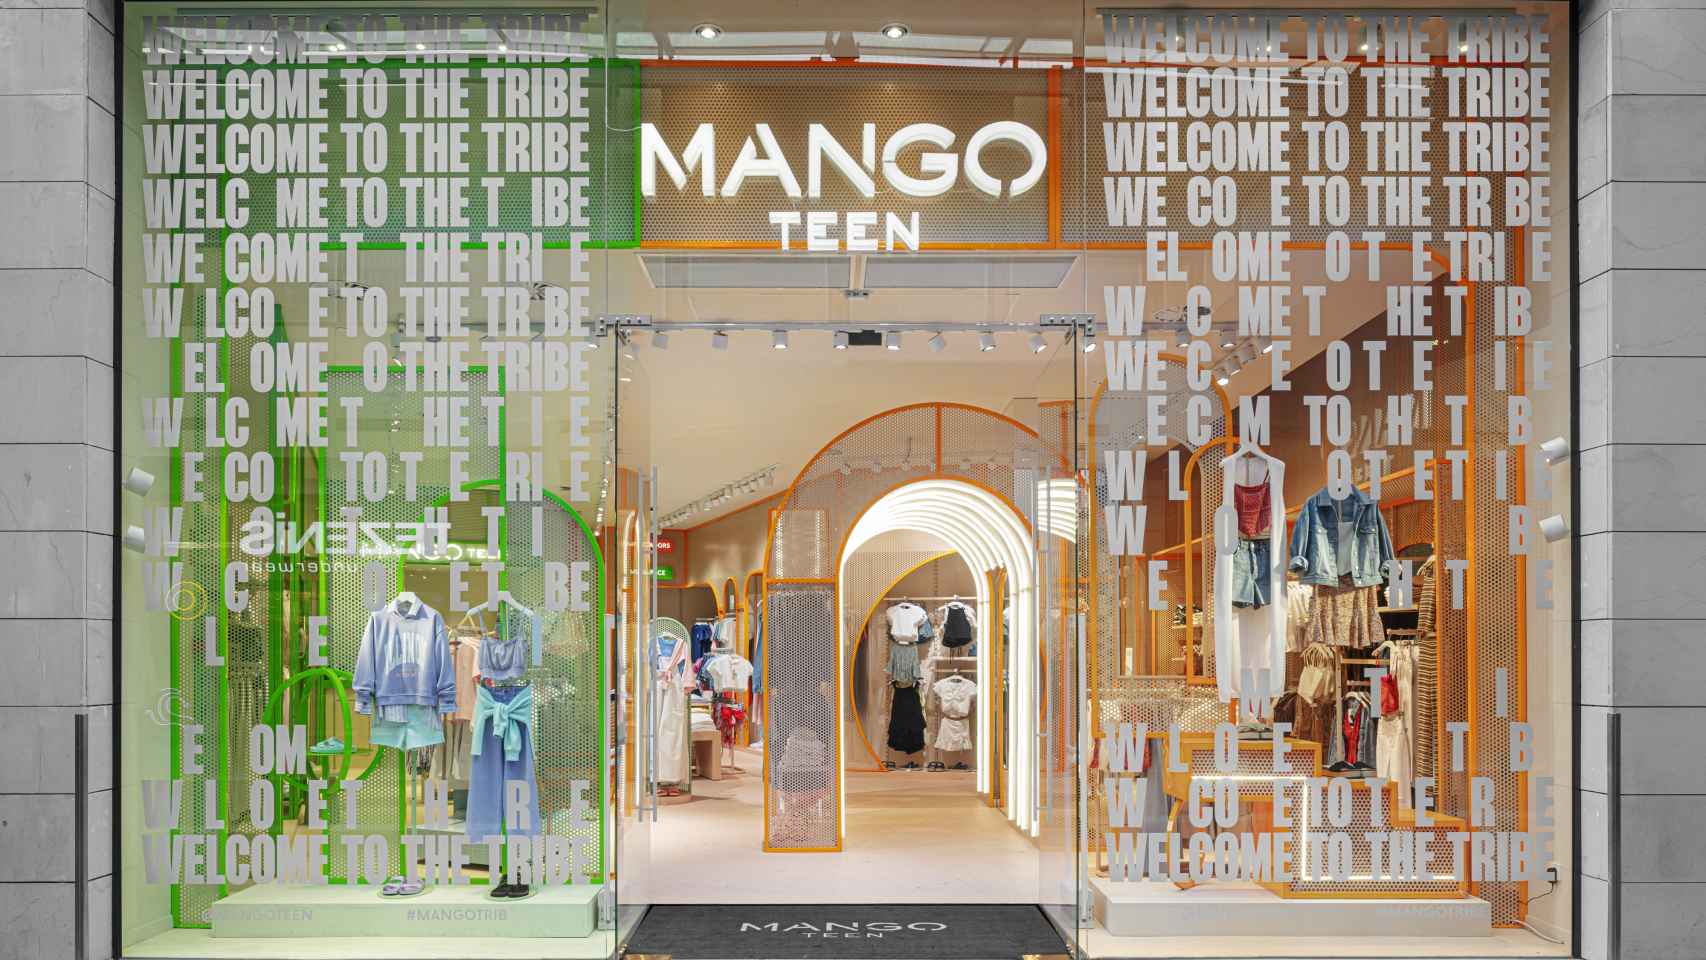 La nueva tienda de Mango Teens, especializada en moda para adolescentes, en Barcelona / MANGO